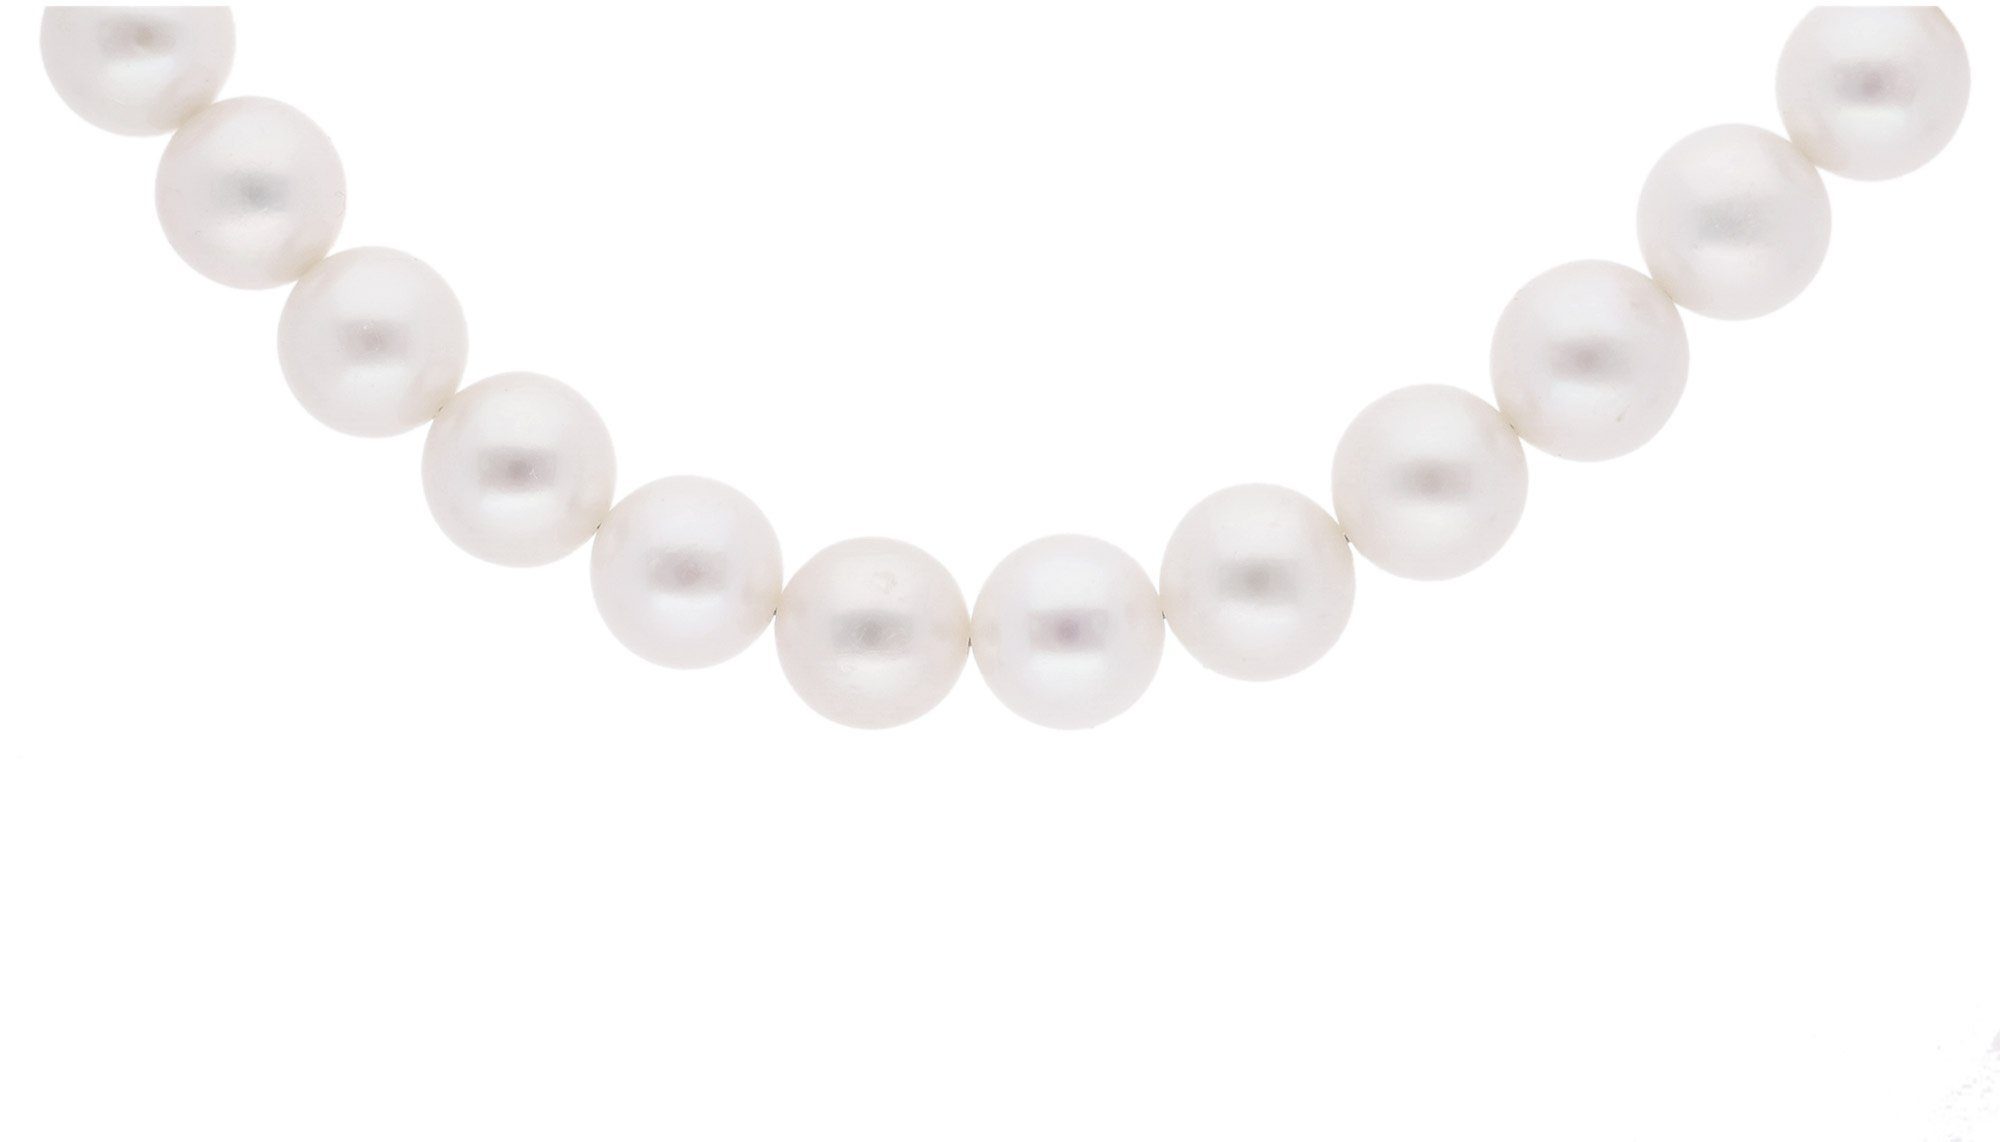 trendor Perlenkette Perlenkette 925 Silber mm 9-10 Süßwasserperlen